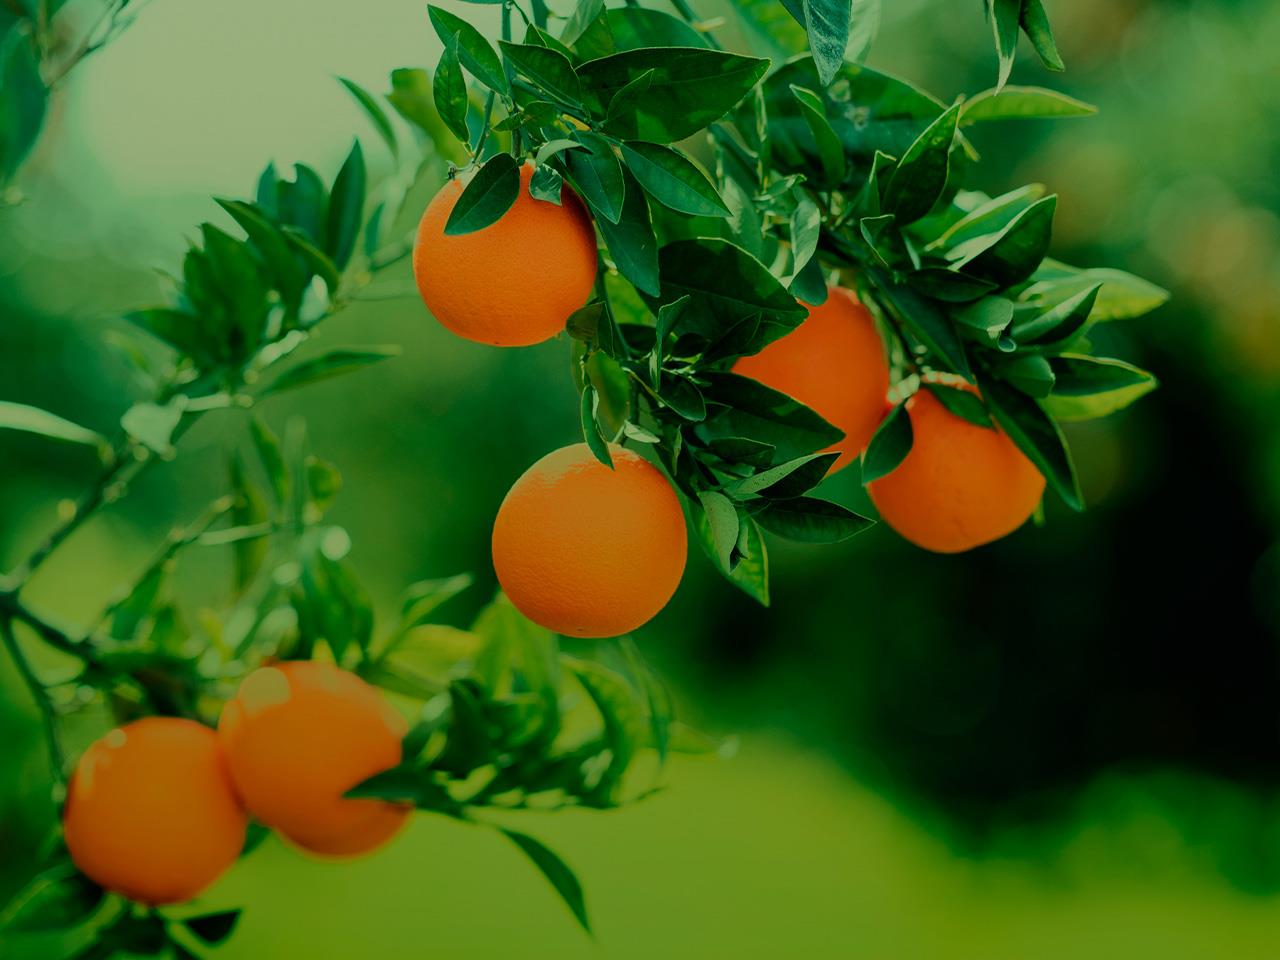 History of Orange Fruit